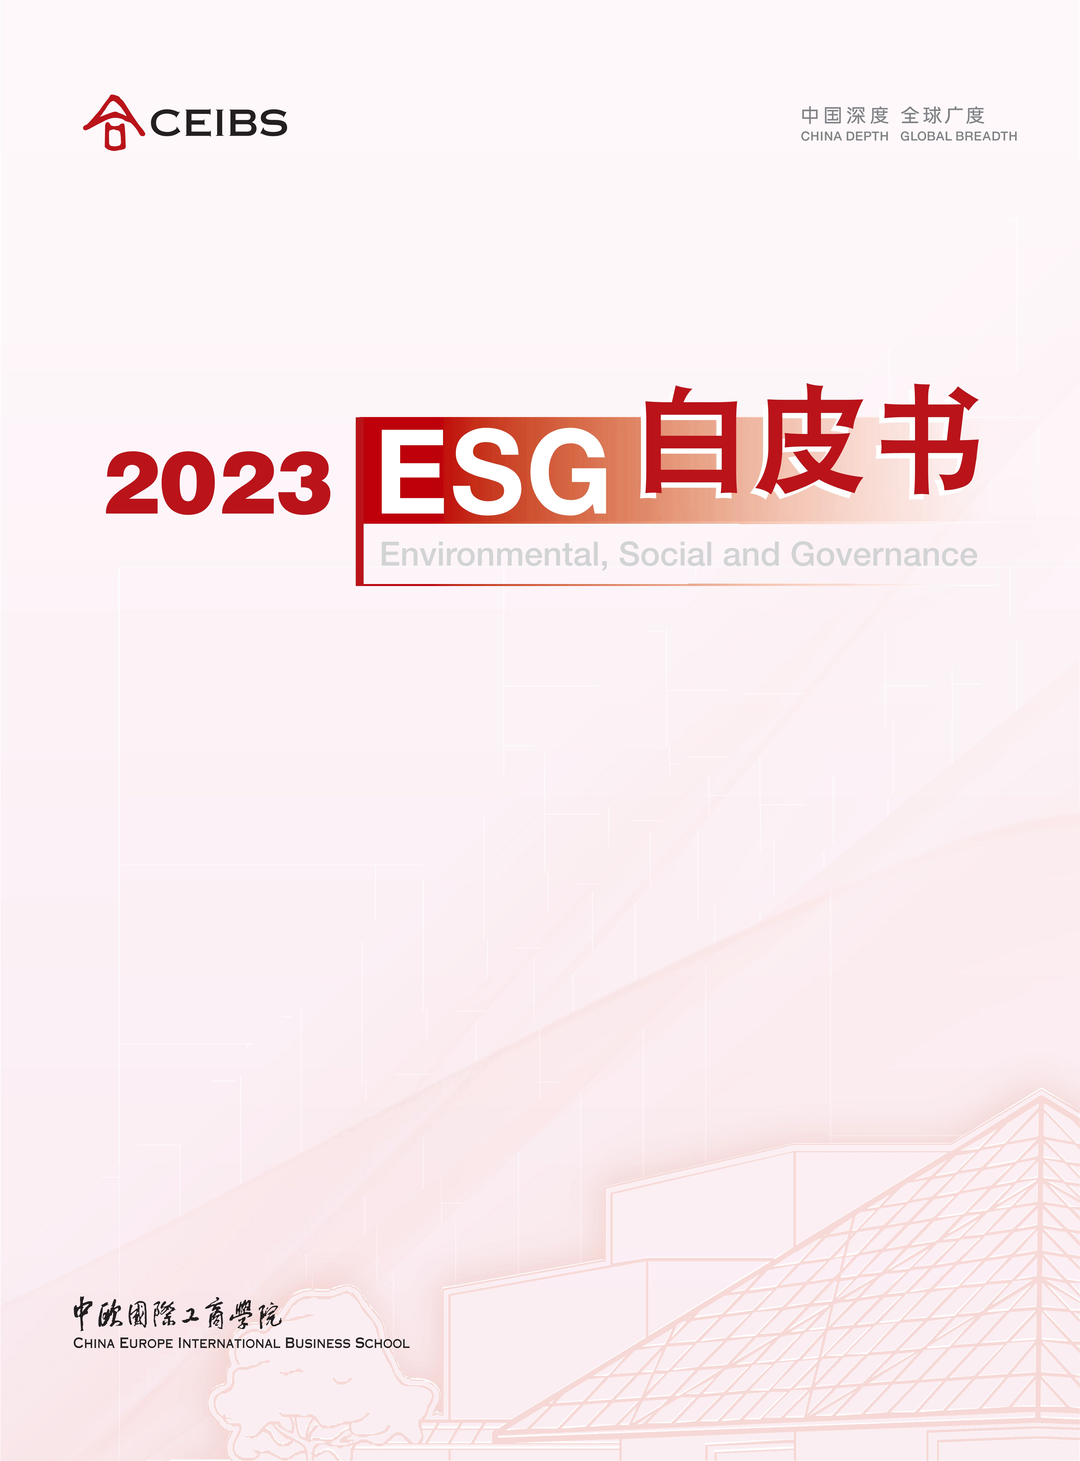 中欧国际工商学院-2023 ESG白皮书下载链接